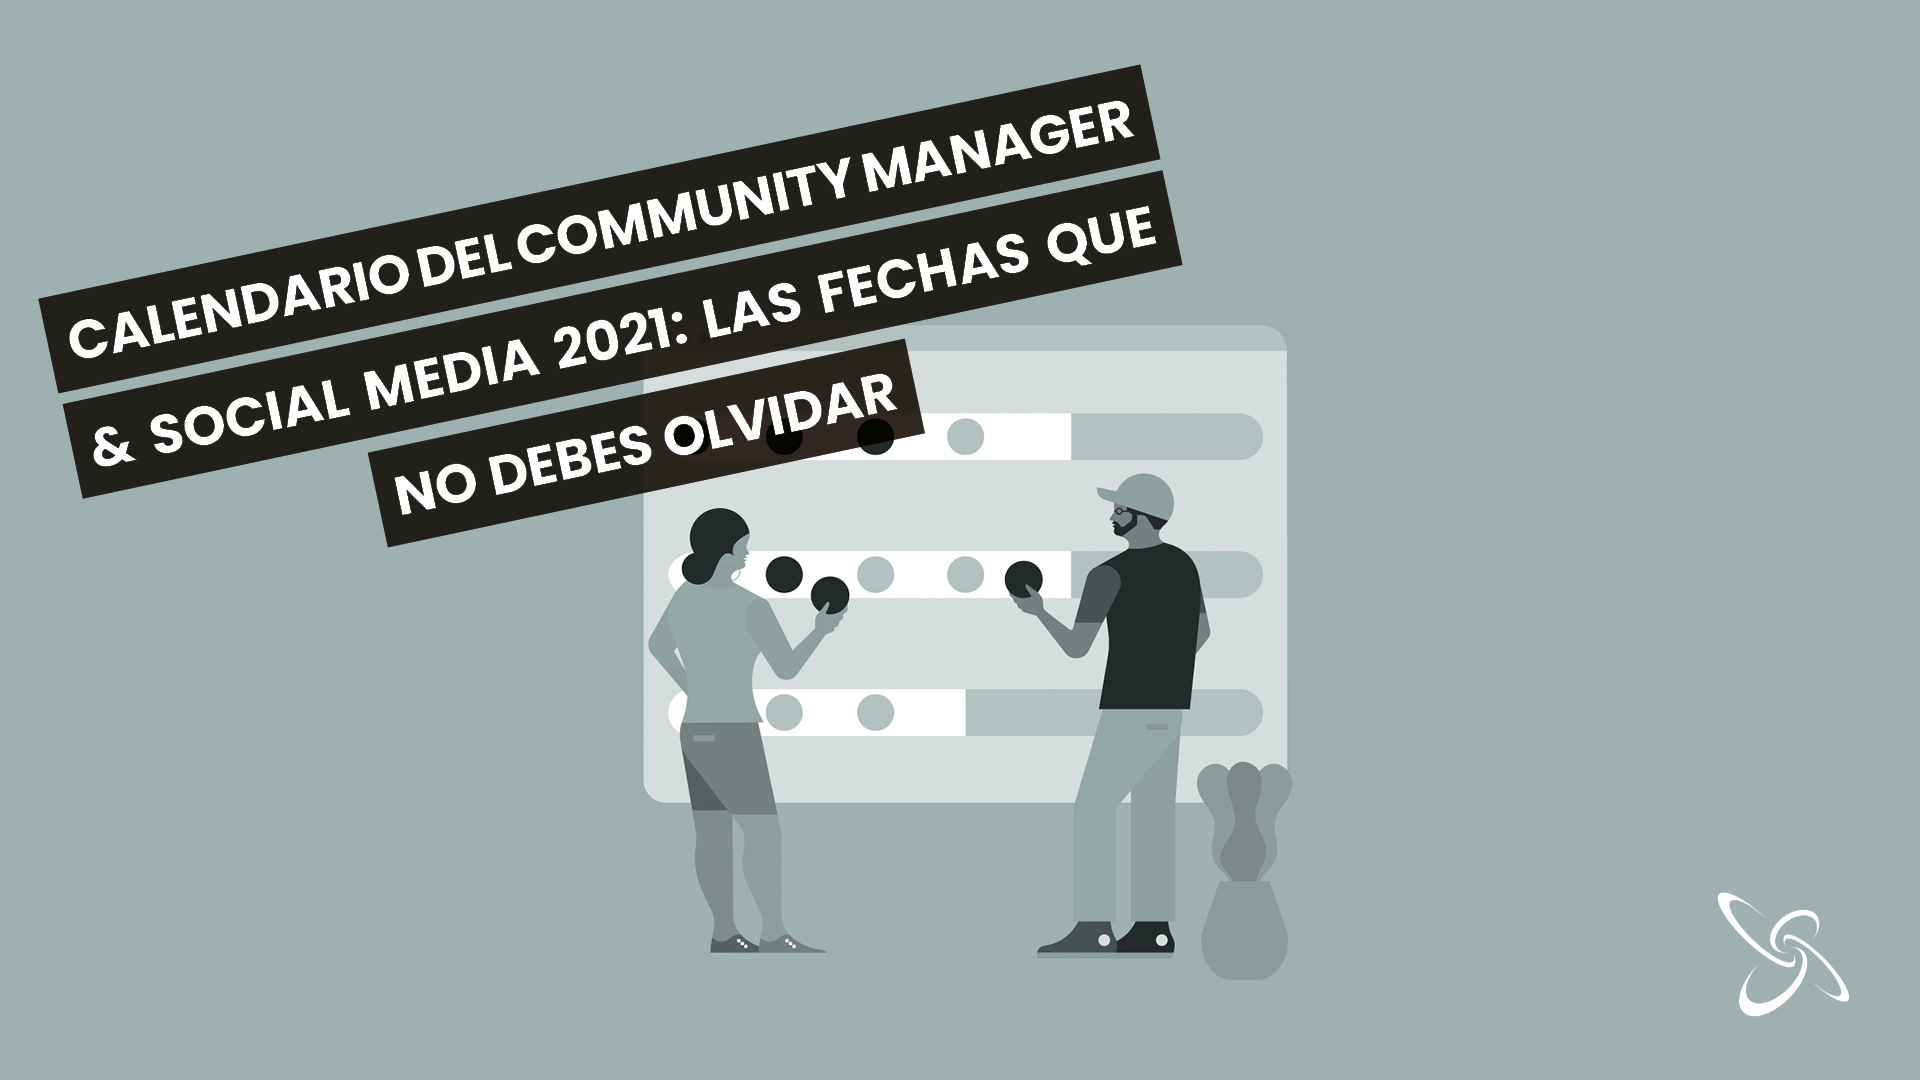 Calendari del Community Manager & Social Media 2021: les dates que no has d’oblidar